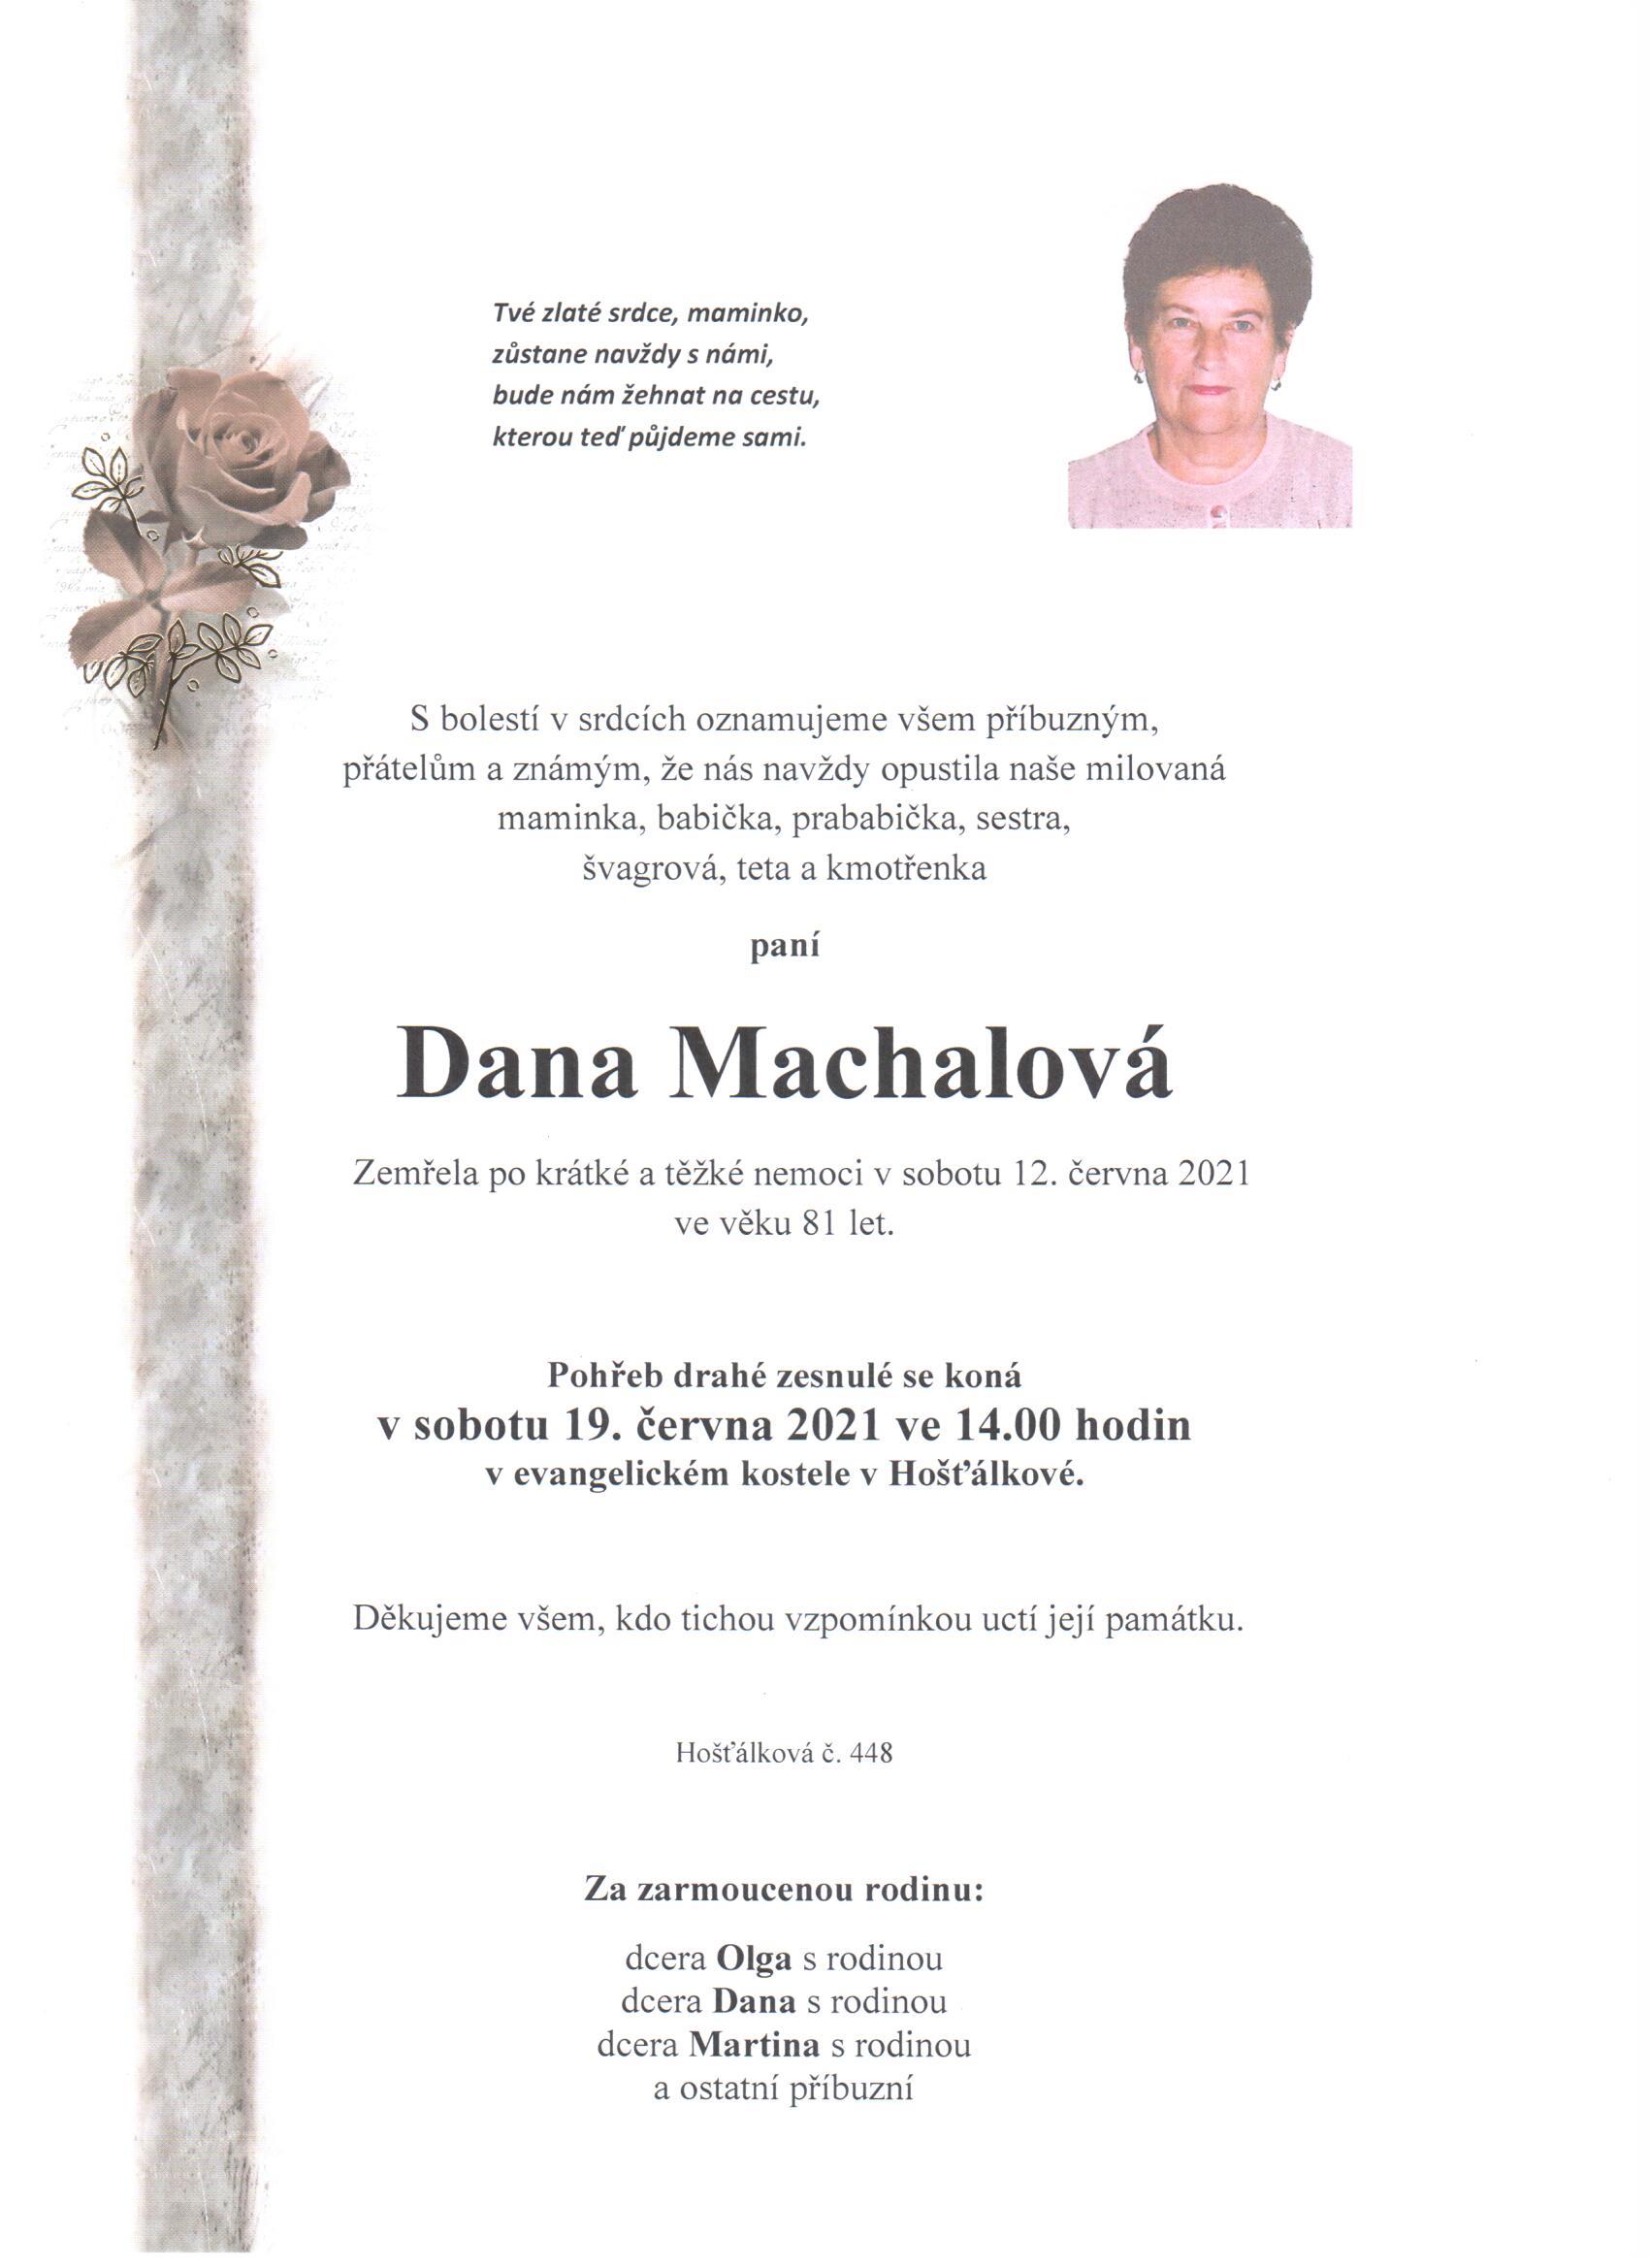 Dana Machalová